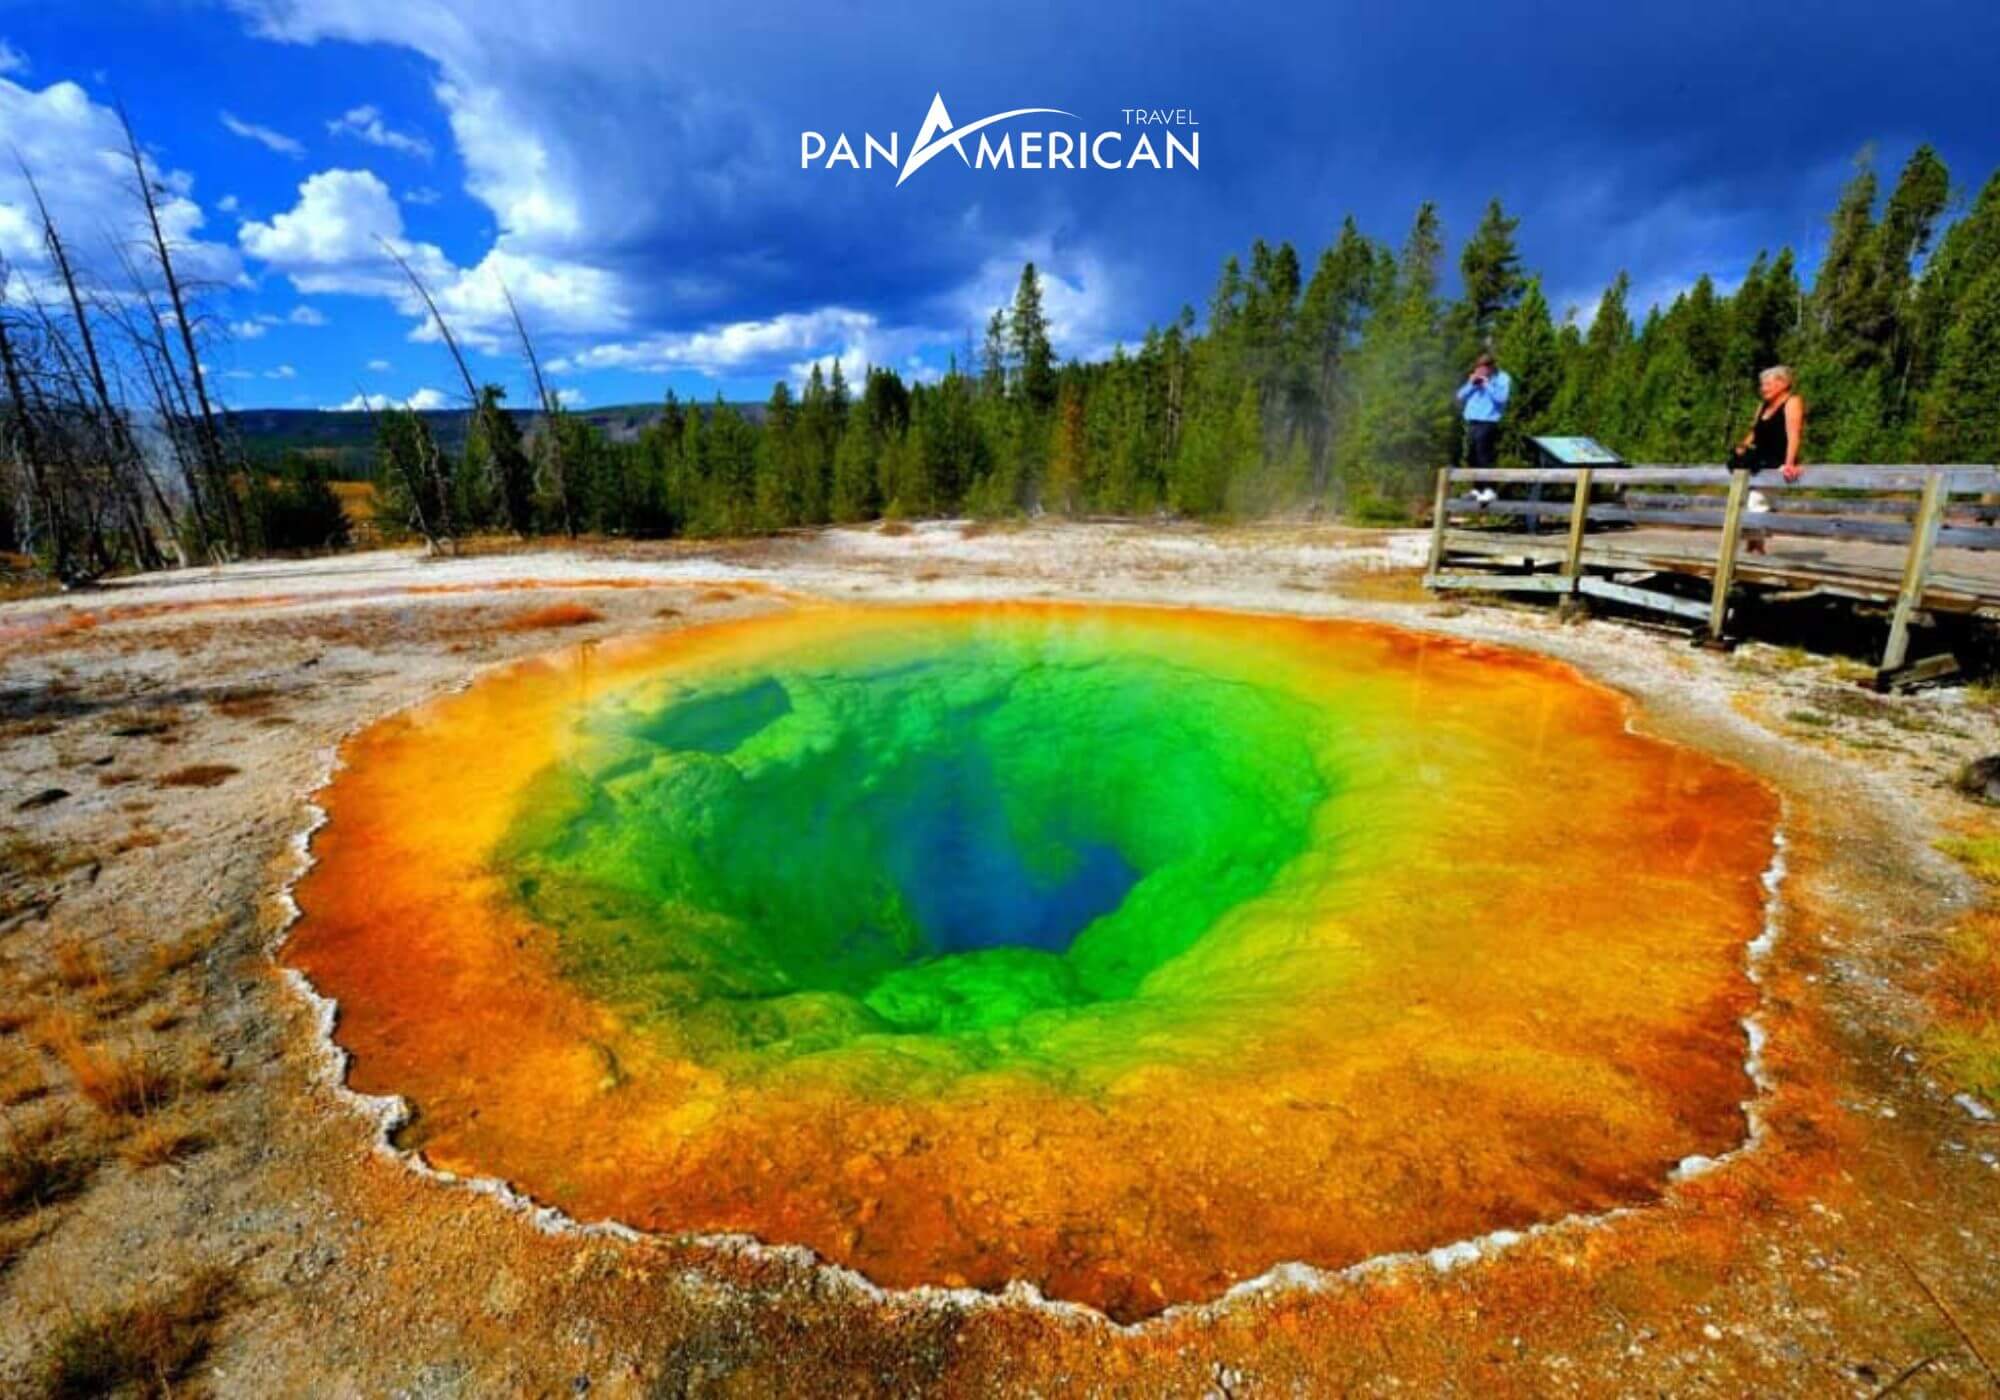 Morning Glory - mạch nước nóng với gam màu ảo diệu. Một trong những điểm dừng chân thú vị tại công viên quốc gia Yellowstone 